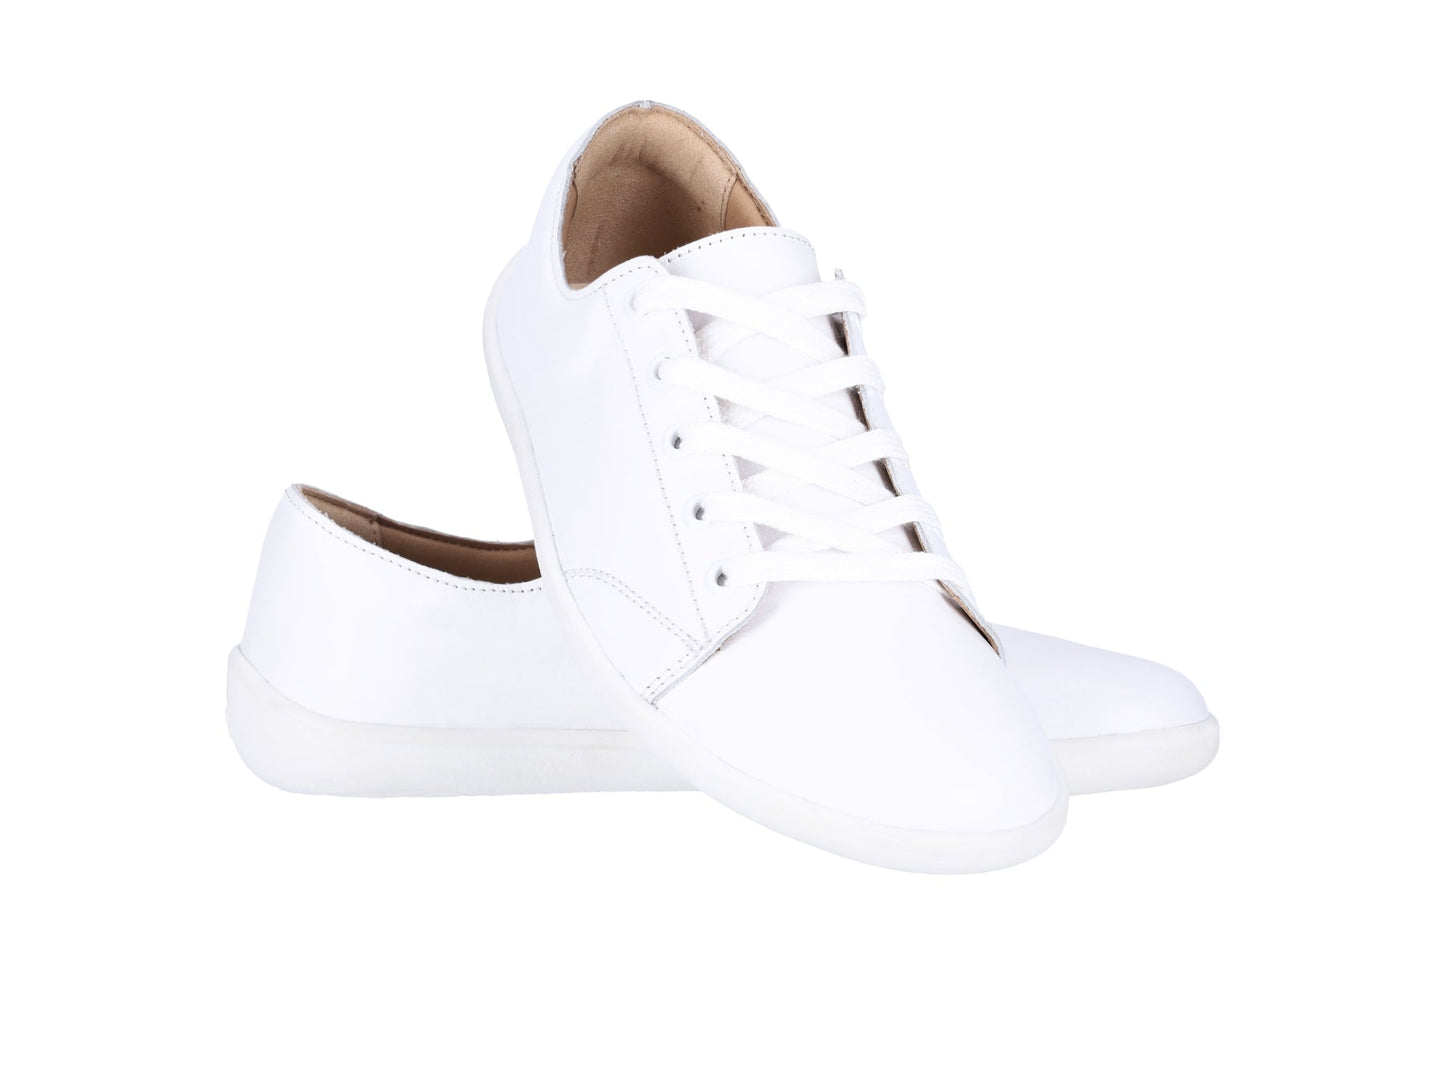 Barefoot Sneakers - Be Lenka Prime 2.0 - White-Be Lenka-Cacles Barefoot